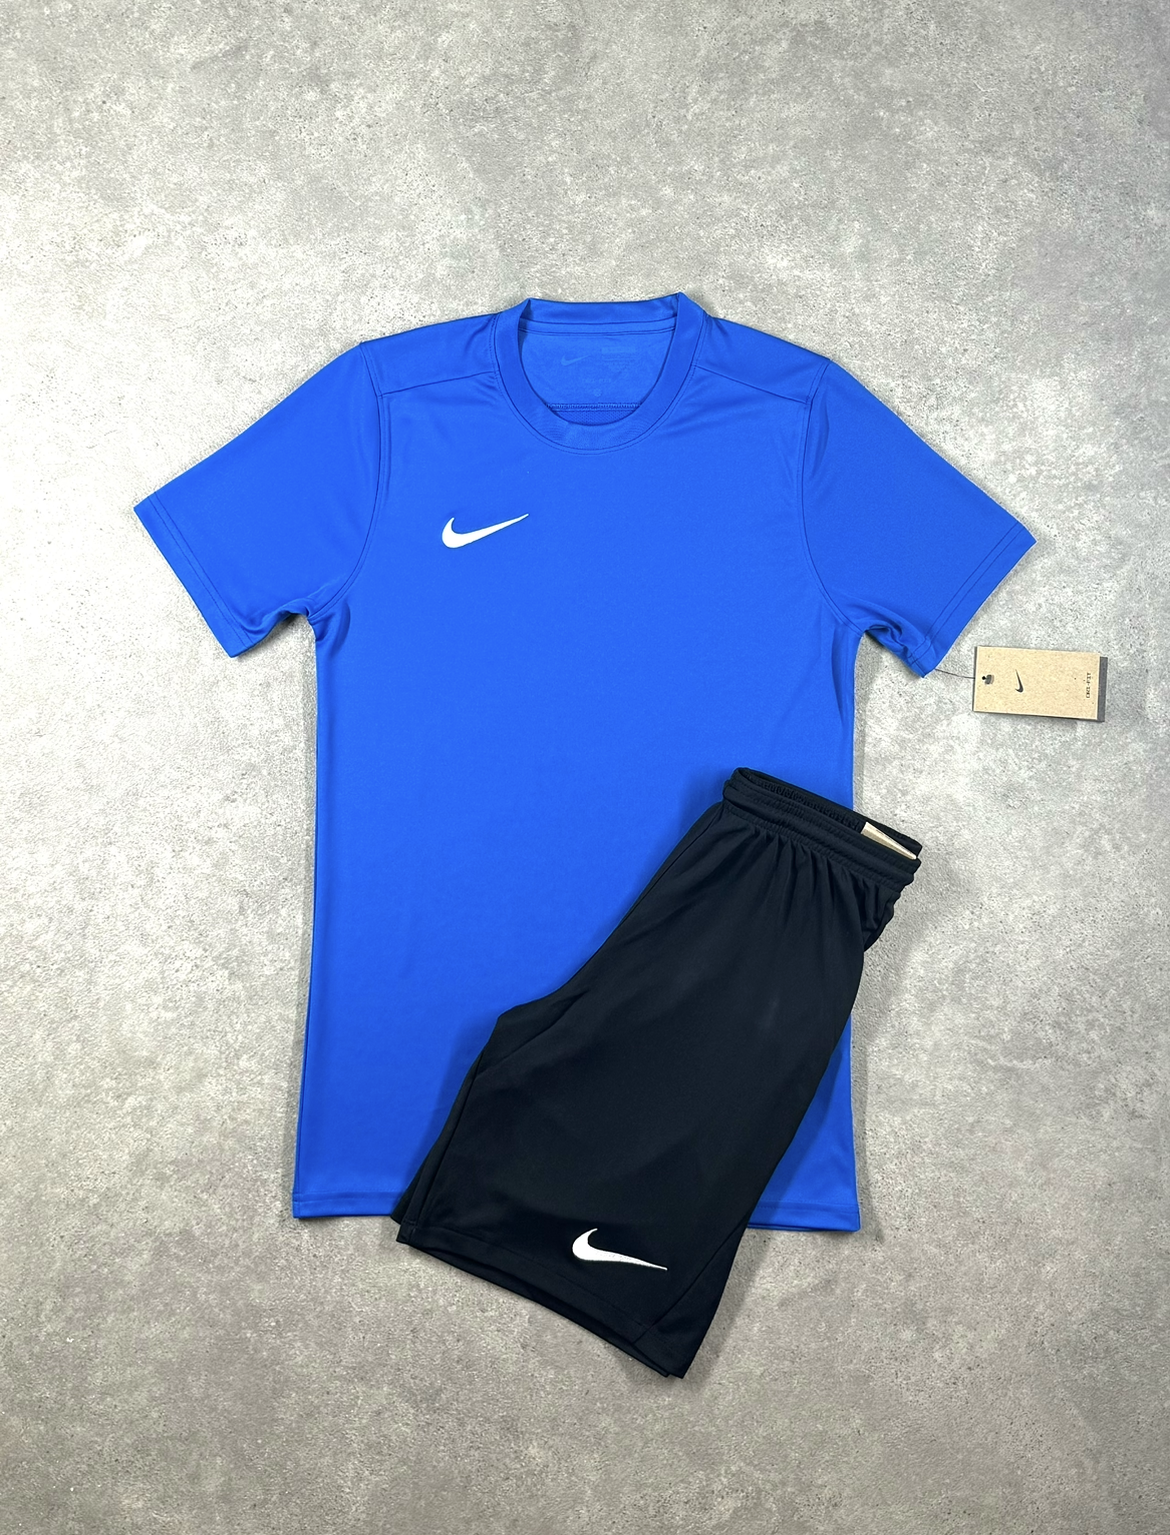 Nike - Dri Fit Set - Royal Blue/Black